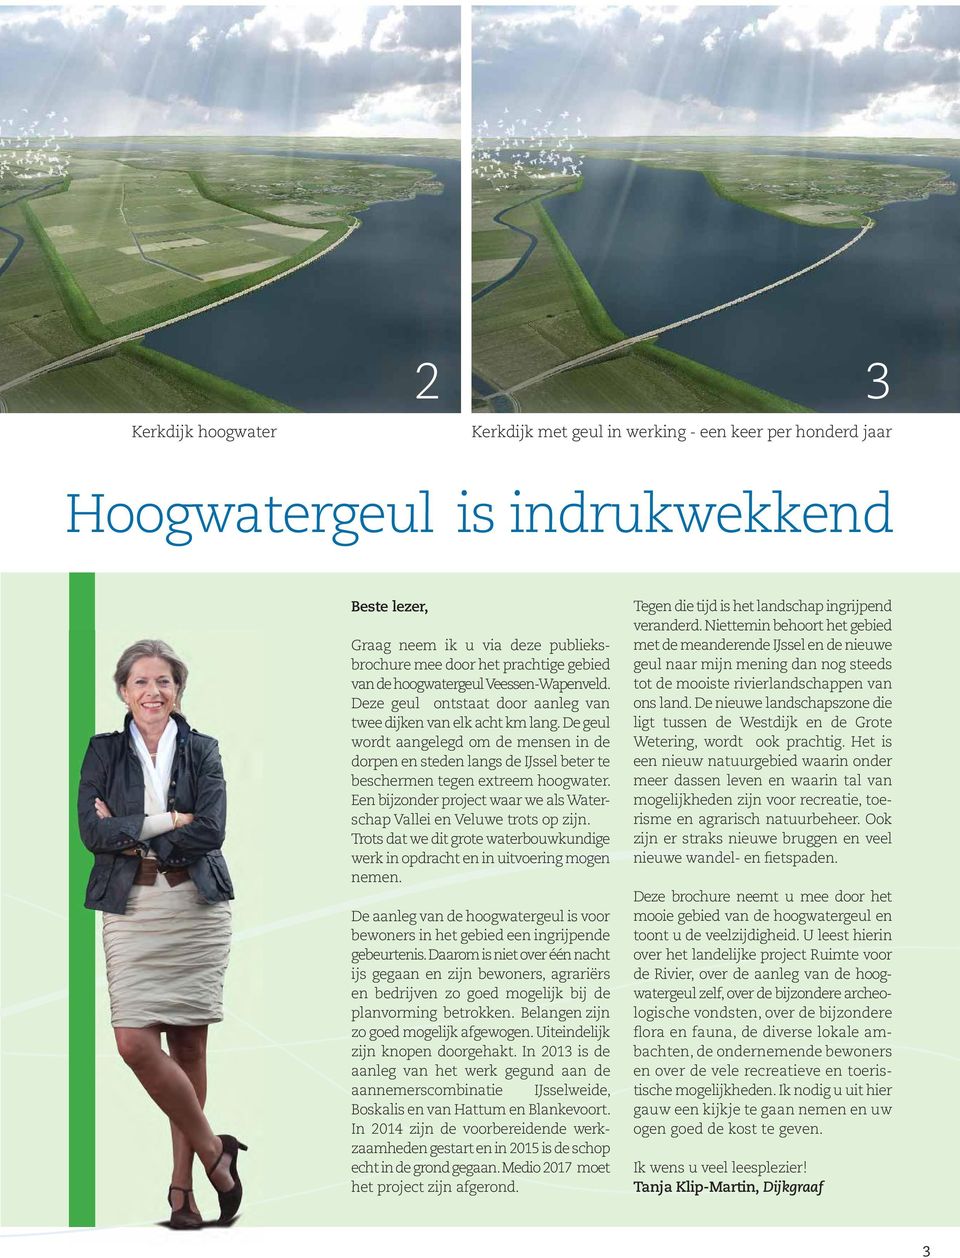 De geul wordt aangelegd om de mensen in de dorpen en steden langs de IJssel beter te beschermen tegen extreem hoogwater. Een bijzonder project waar we als Waterschap Vallei en Veluwe trots op zijn.